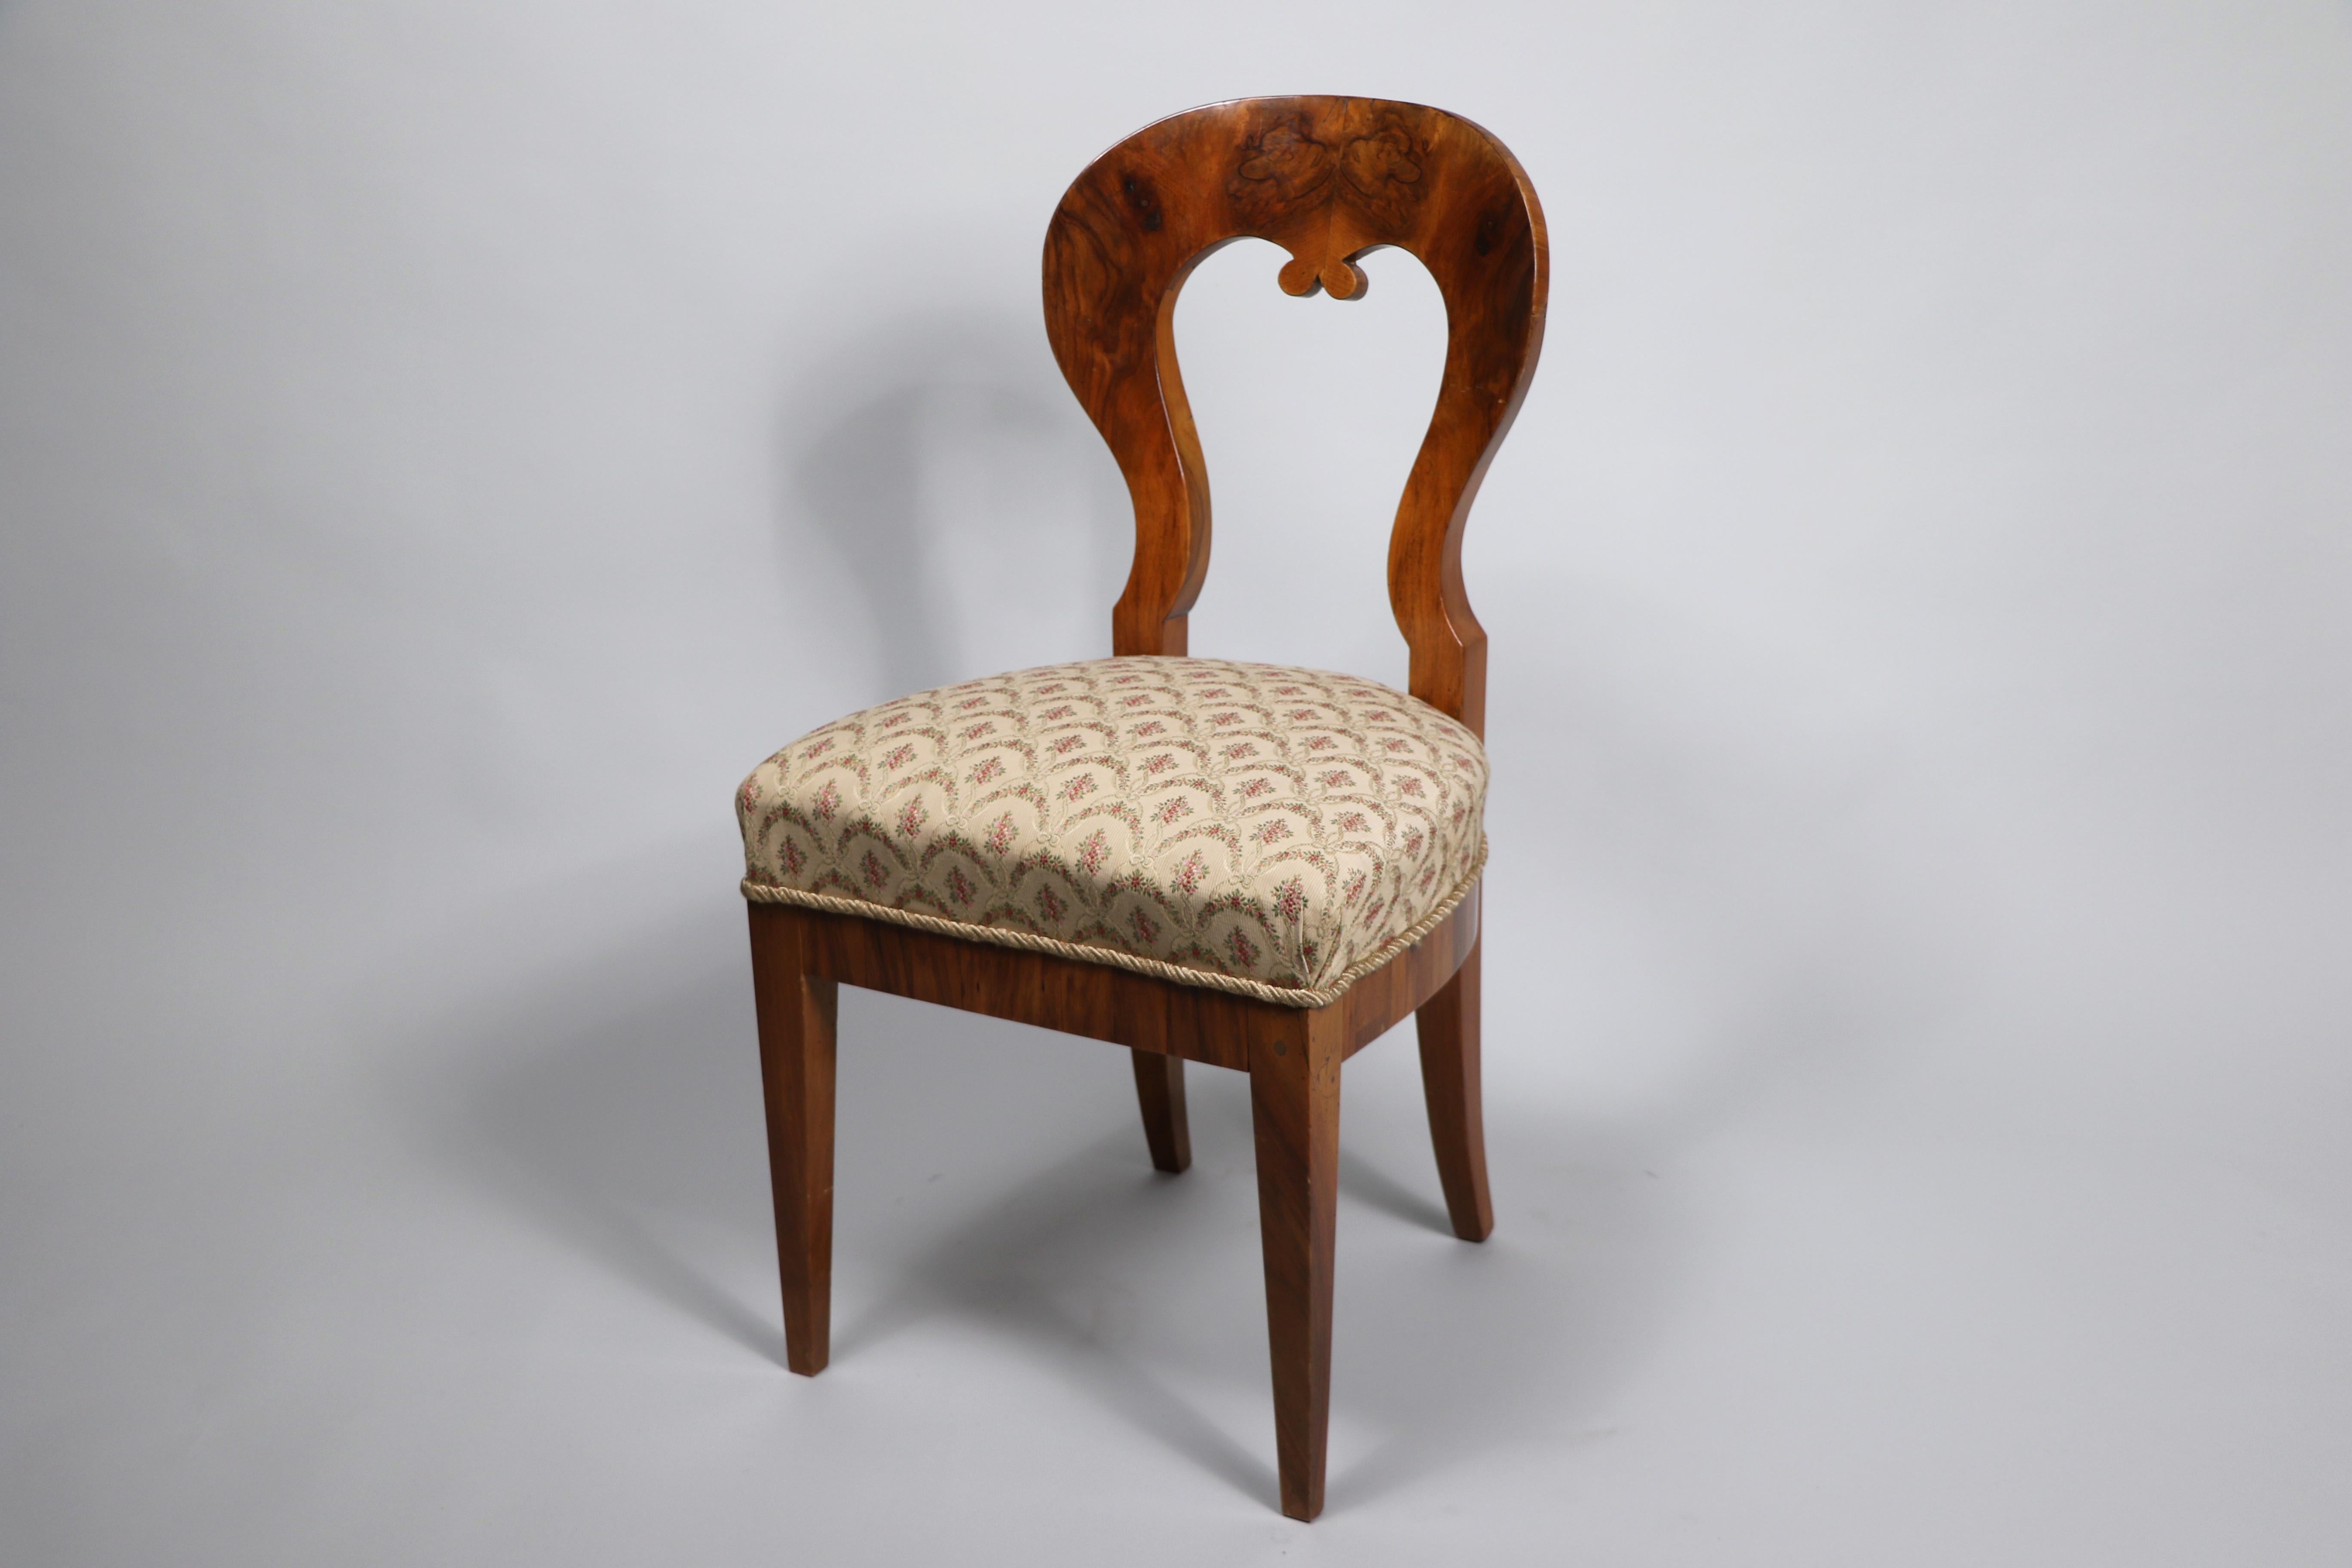 Hallo,
Dieser schöne Biedermeier-Sessel wurde um 1825 in Wien hergestellt.

Die Stücke des Wiener Biedermeier zeichnen sich durch ihre raffinierten Proportionen, ihr seltenes und raffiniertes Design und ihre exzellente Handwerkskunst aus und haben